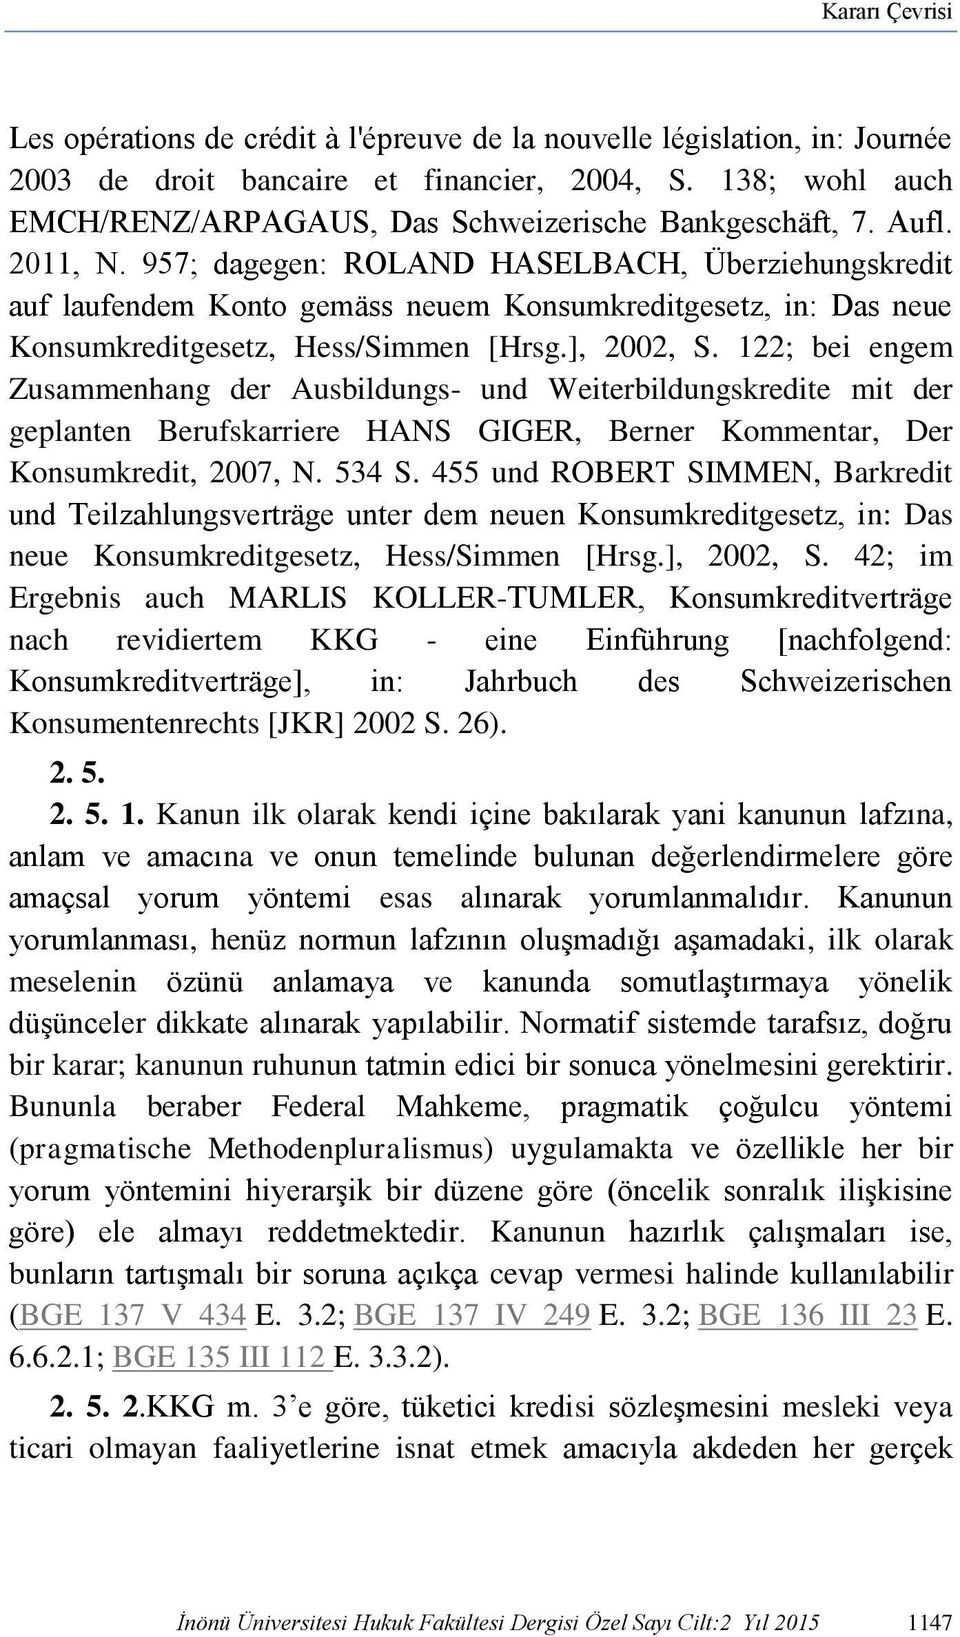 957; dagegen: ROLAND HASELBACH, Überziehungskredit auf laufendem Konto gemäss neuem Konsumkreditgesetz, in: Das neue Konsumkreditgesetz, Hess/Simmen [Hrsg.], 2002, S.